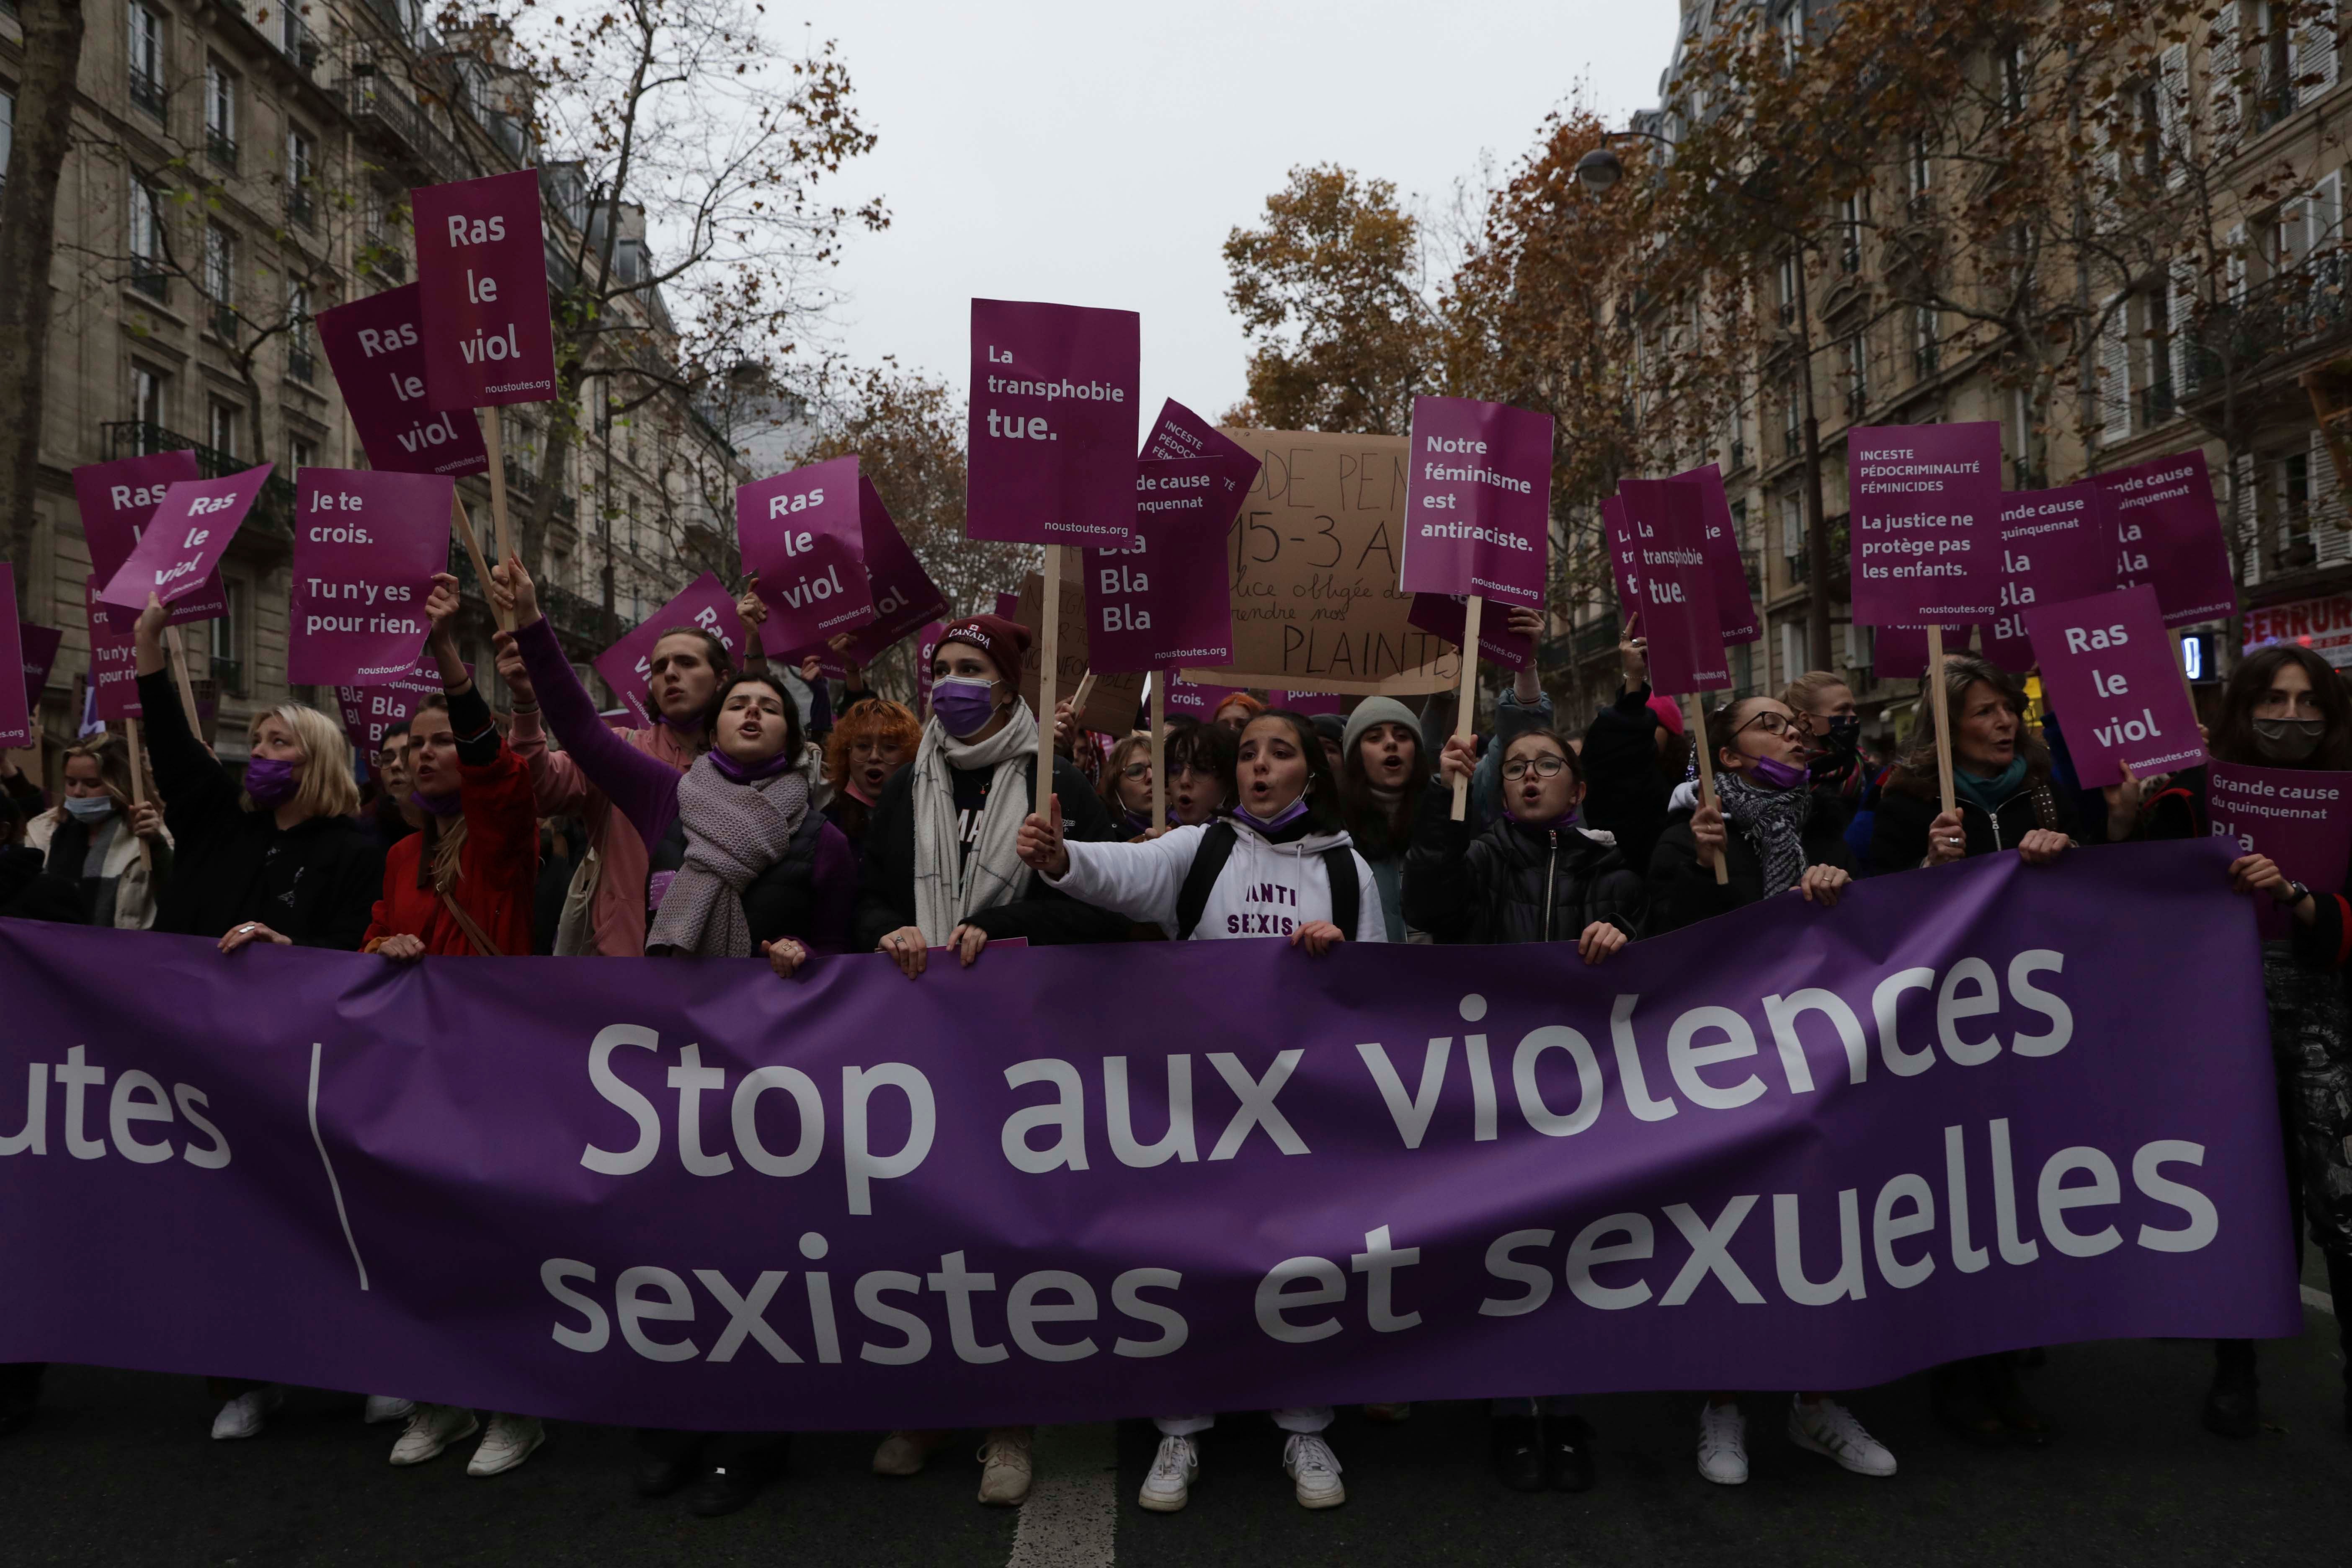 Des femmes portent une banderole "Stop aux violences sexistes et sexuelles", le 20 novembre 2021 à Paris.